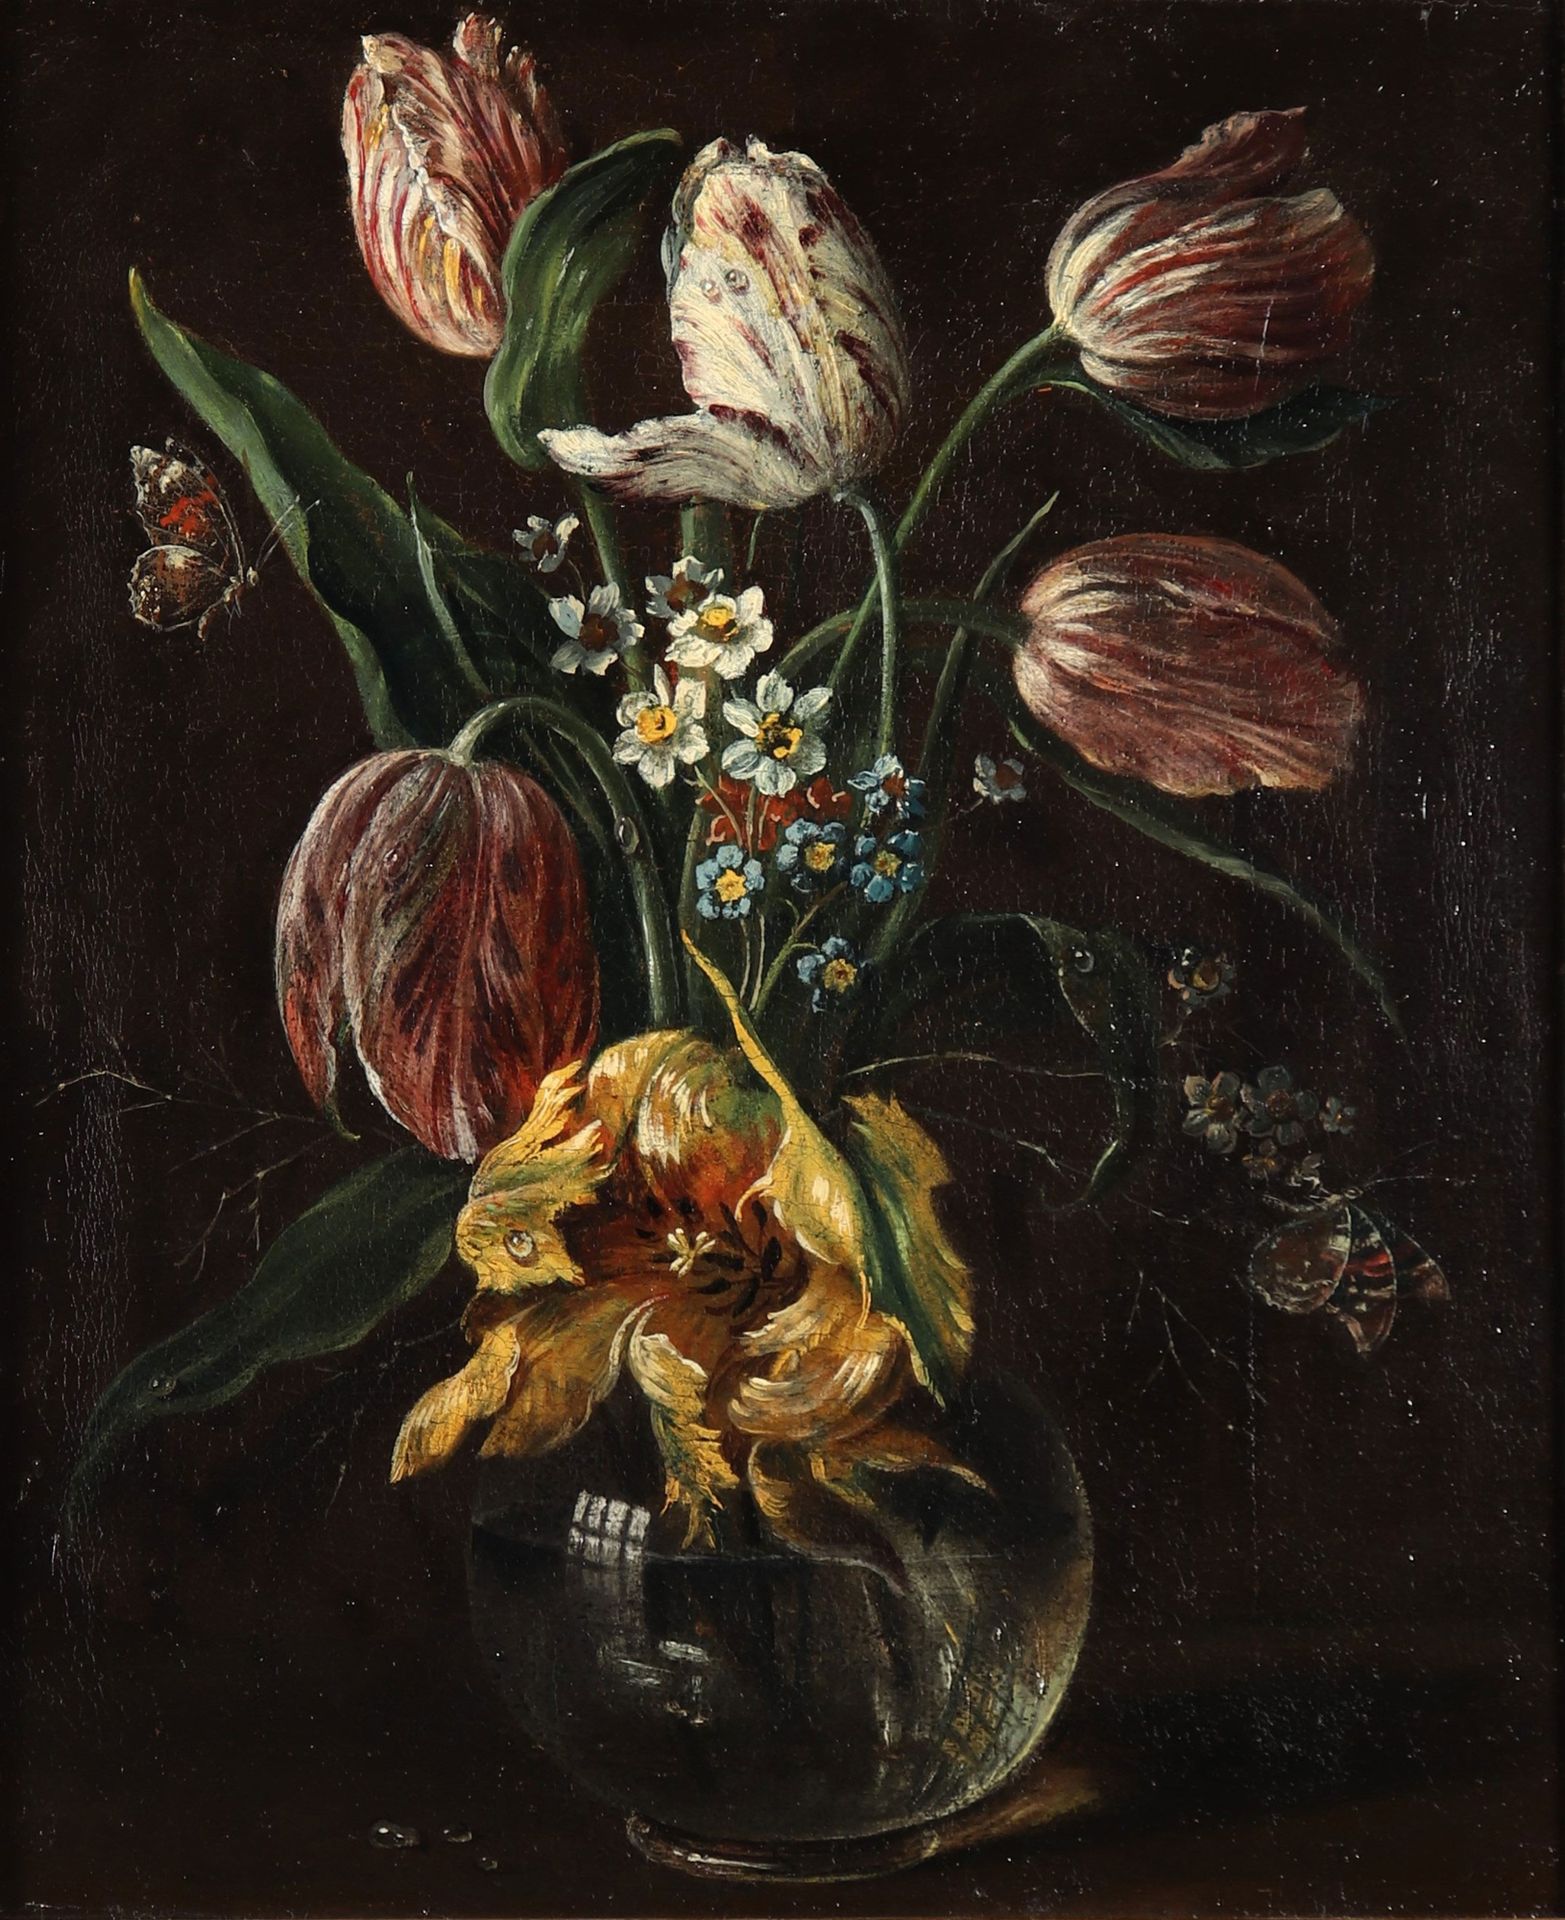 Nature morte "bouquet de fleurs aux papillons" dans le goût du 17ème 17世纪风格的静物 "&hellip;